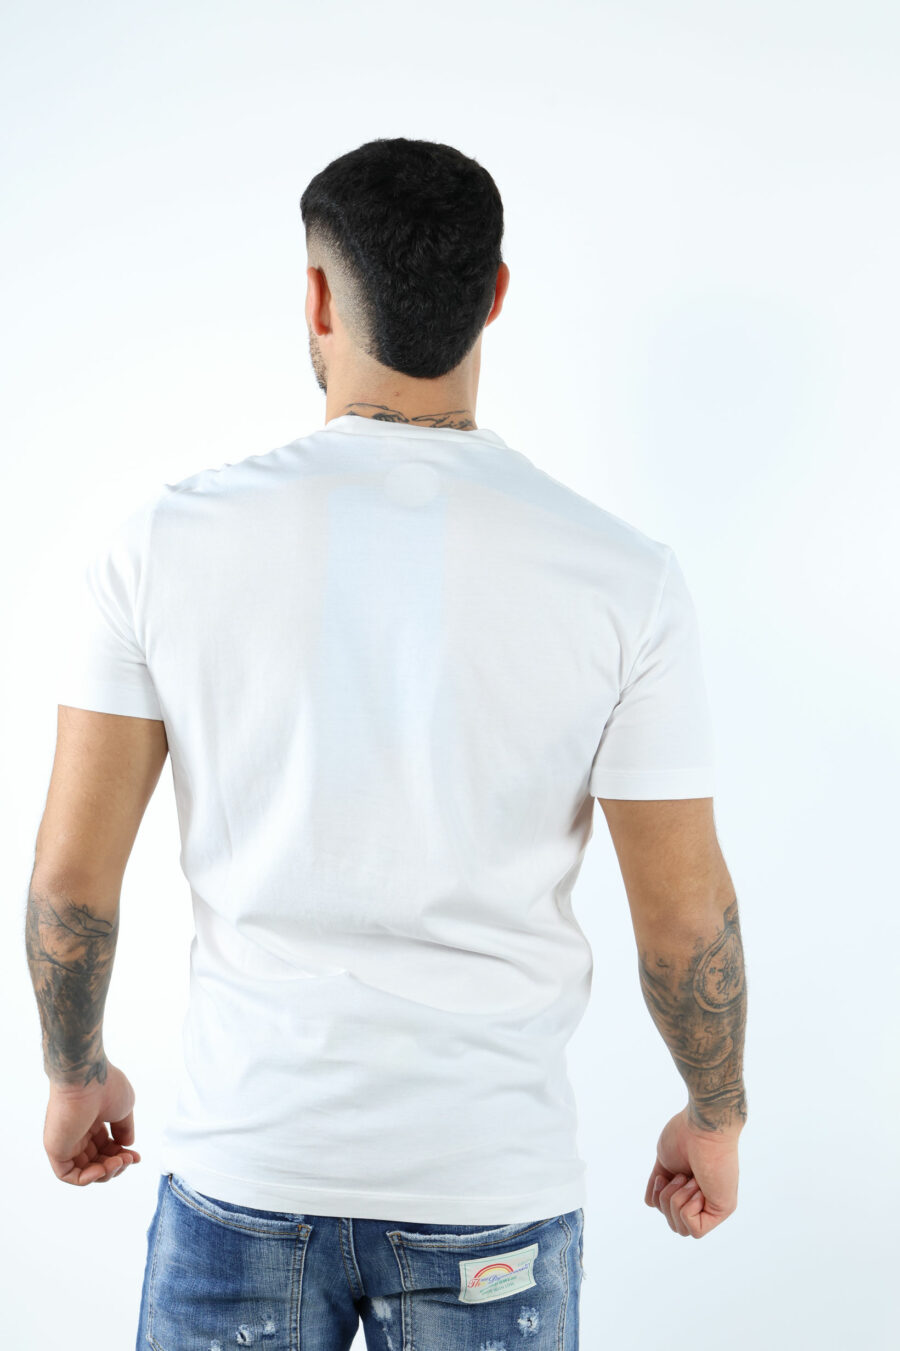 Camiseta blanca con maxilogo "ceresio 9, milano" - 106684